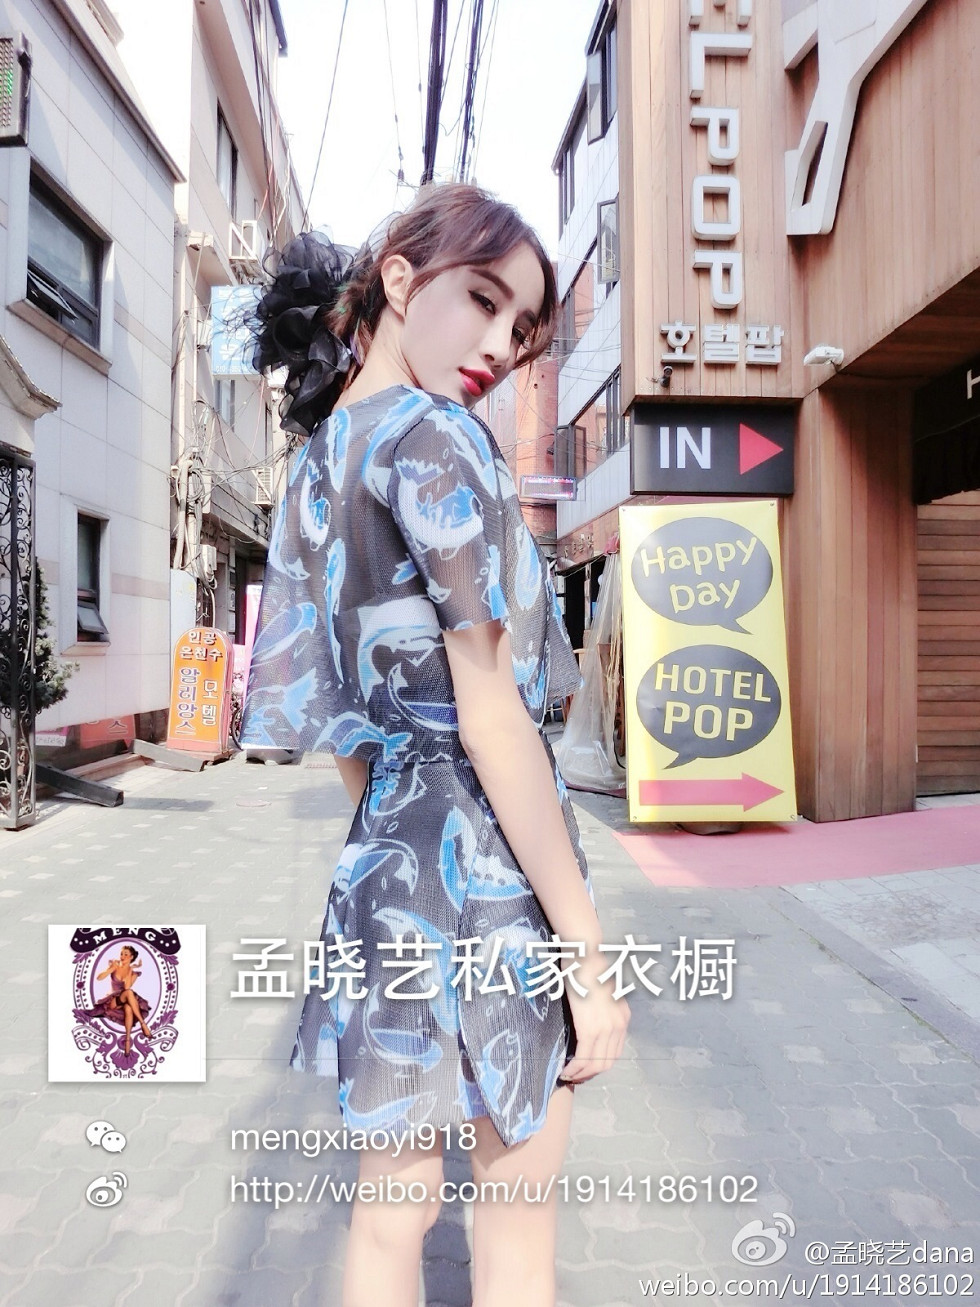 甜美系宅男女神孟晓艺Dana完美身材豪乳诱惑海量微博写真(二)300P